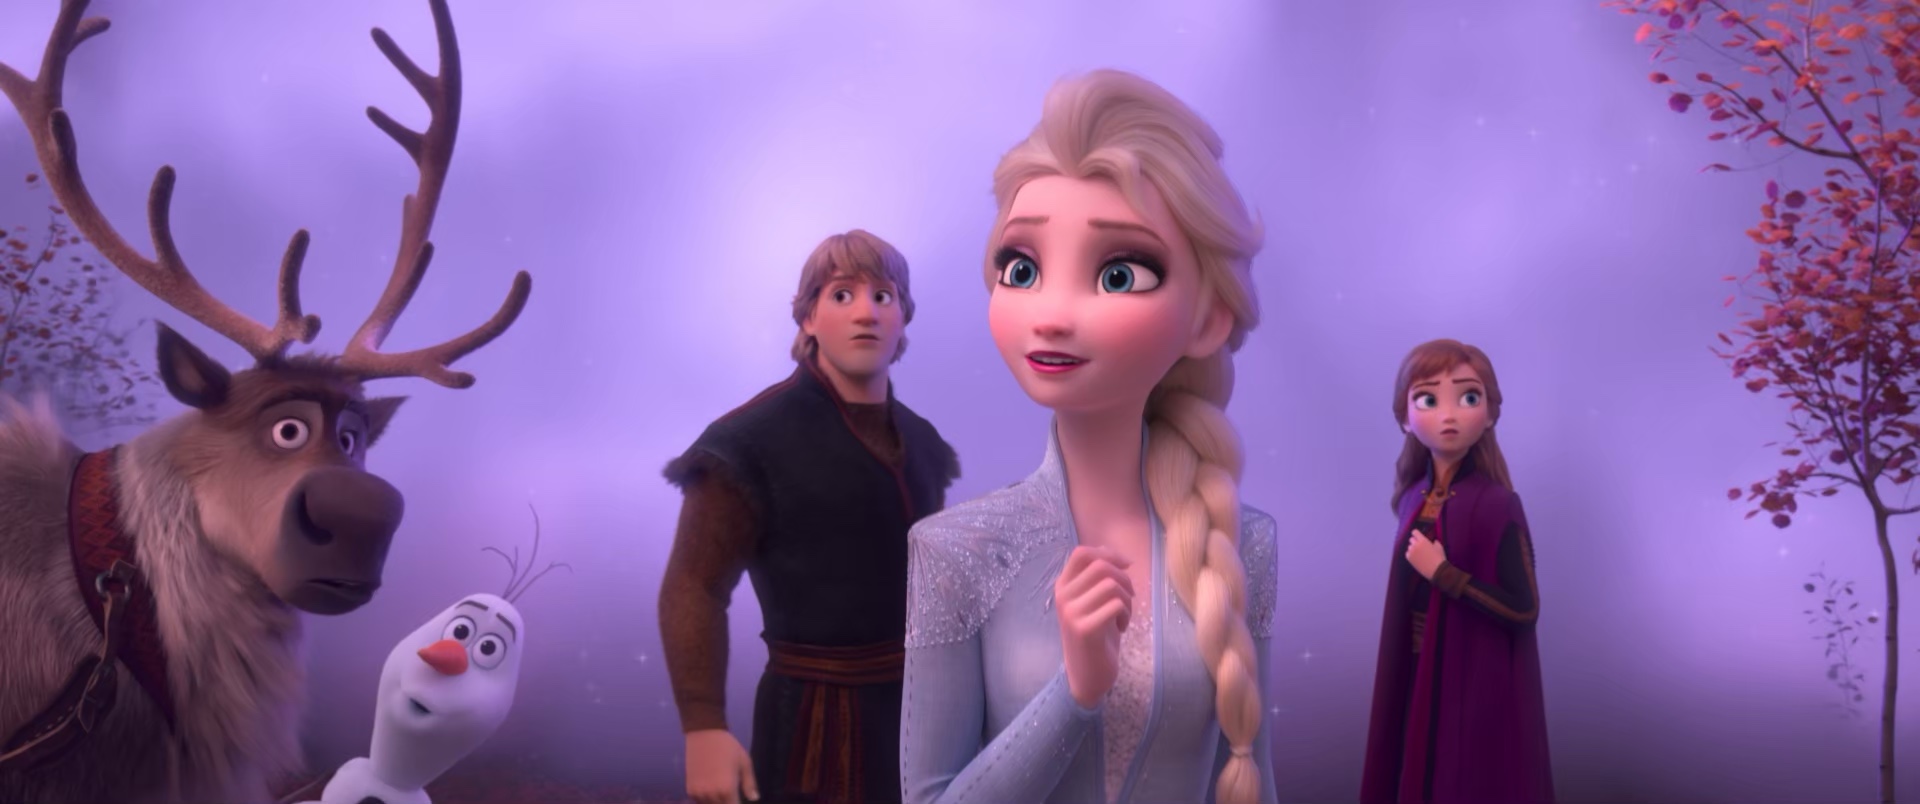 アナと雪の女王2 Frozen 2